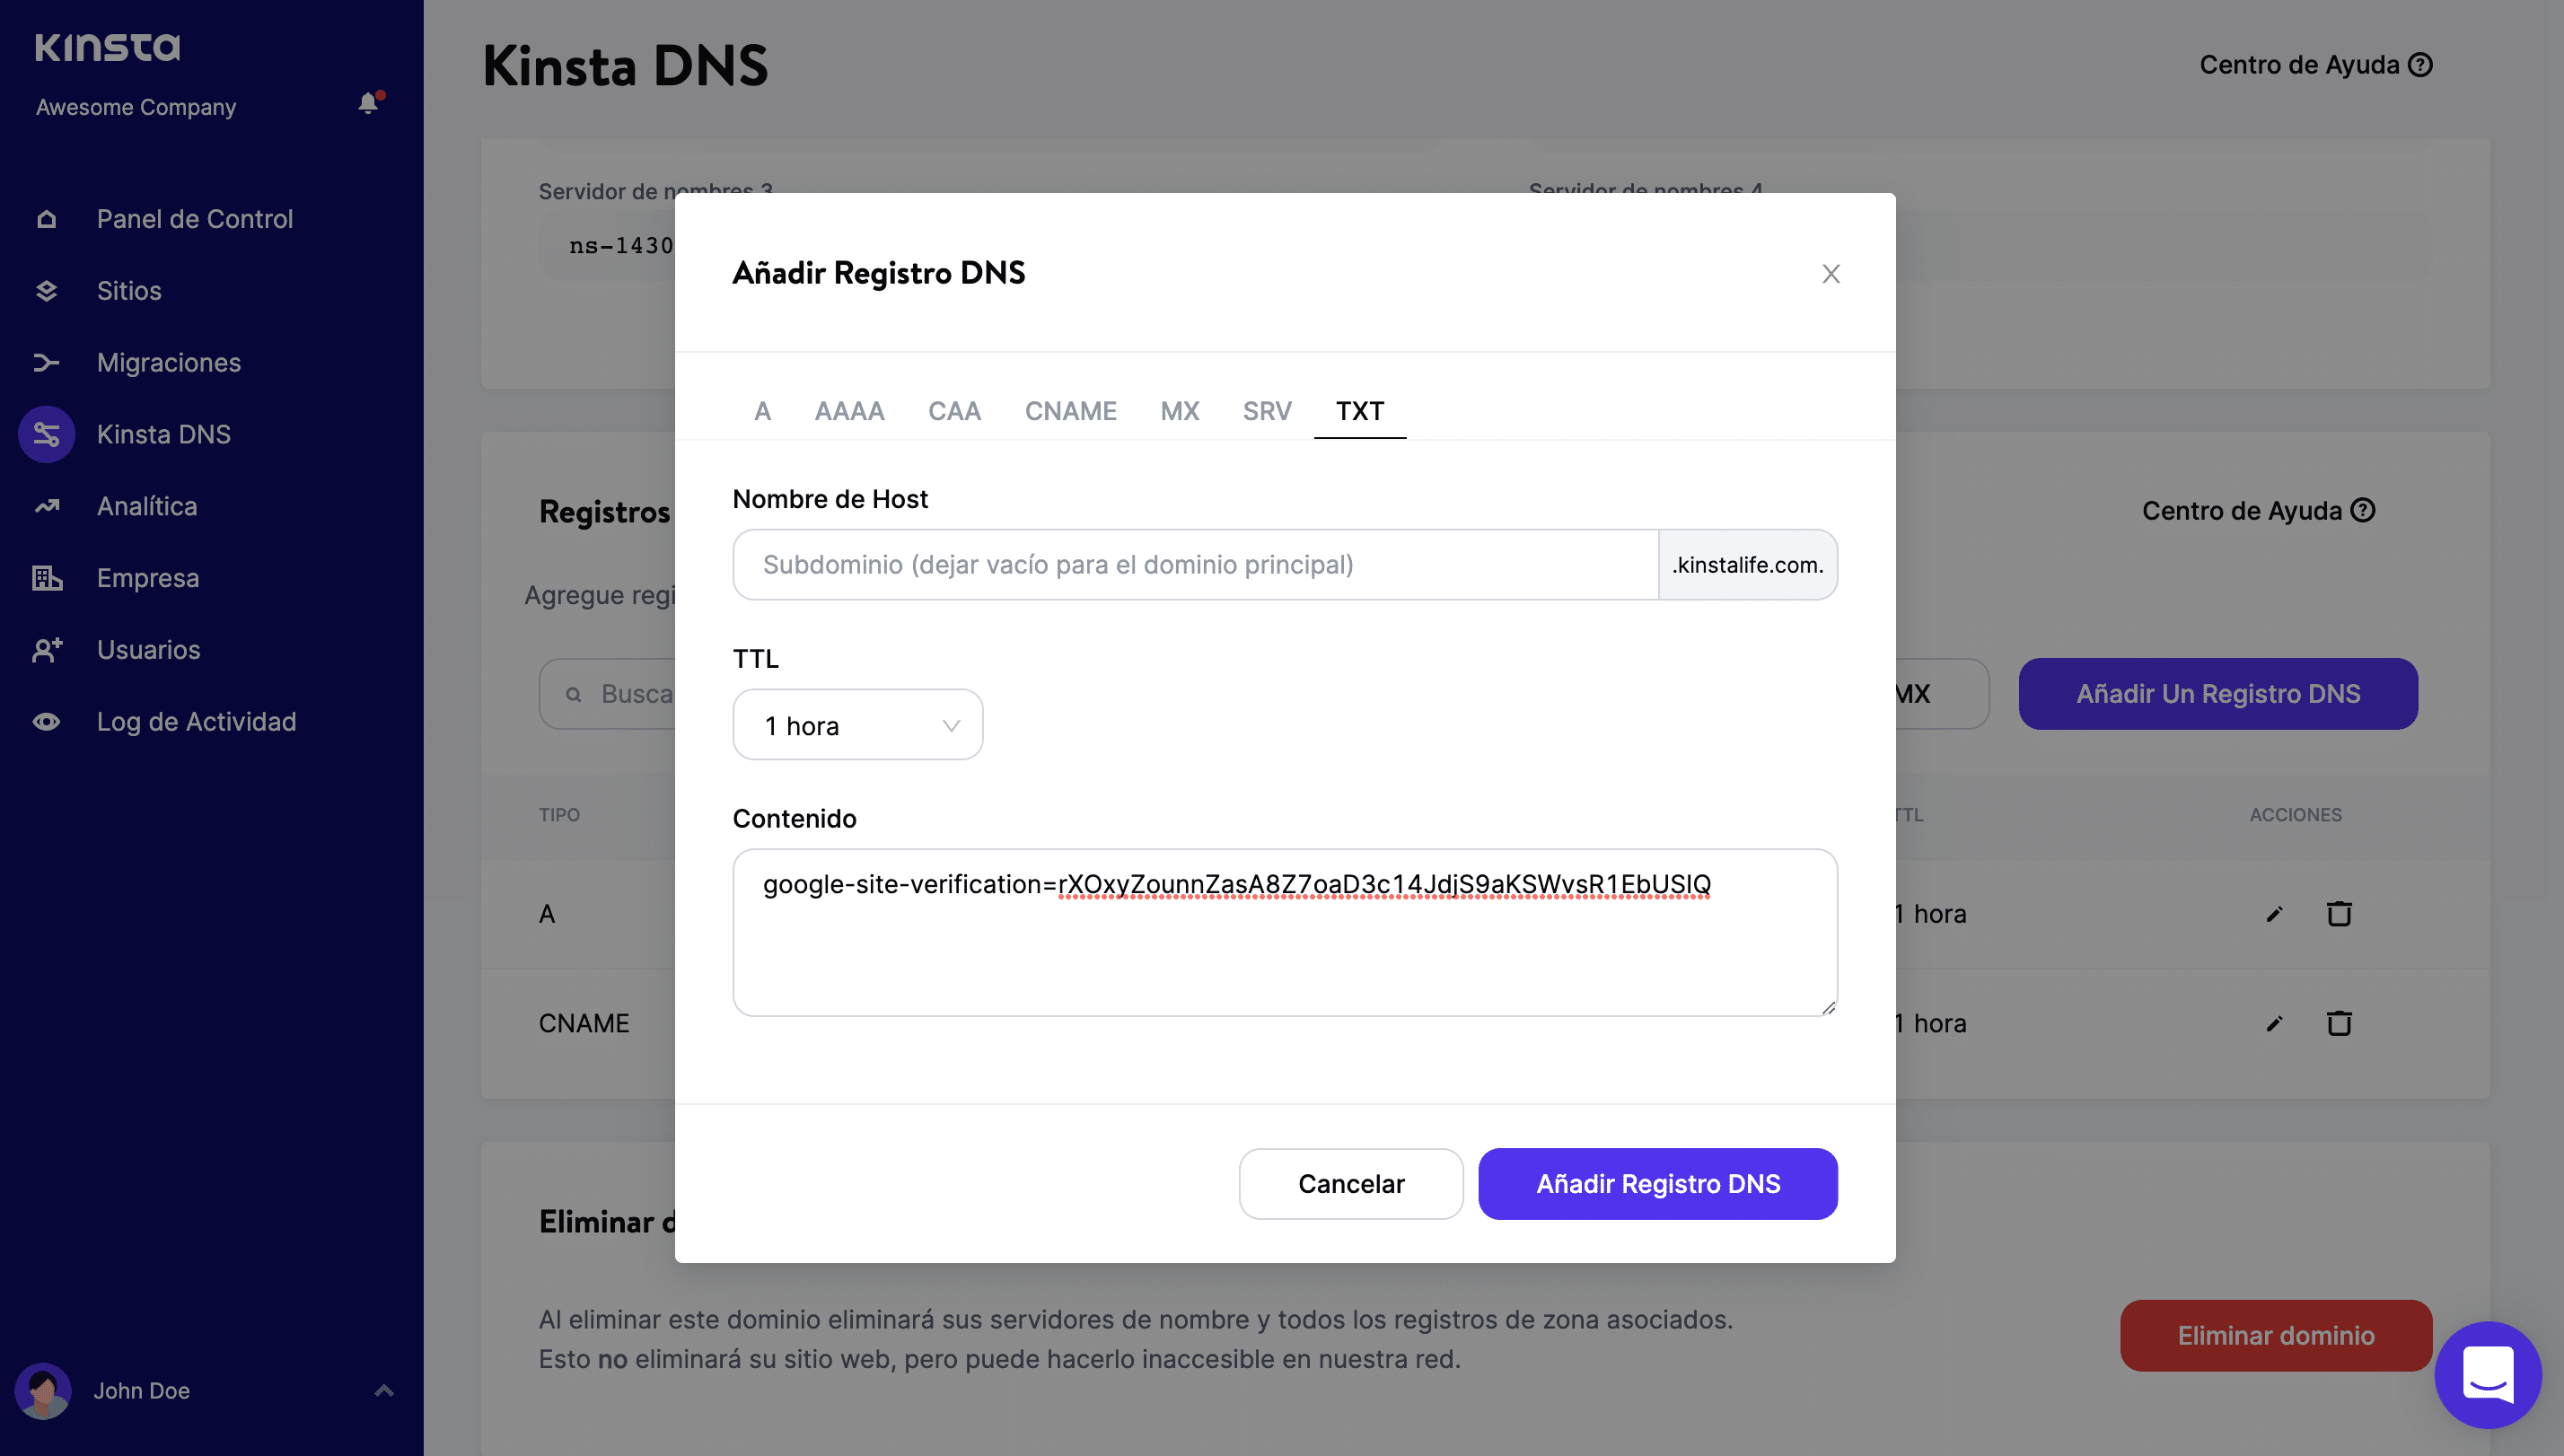 Añadir un registro TXT en Kinsta DNS.